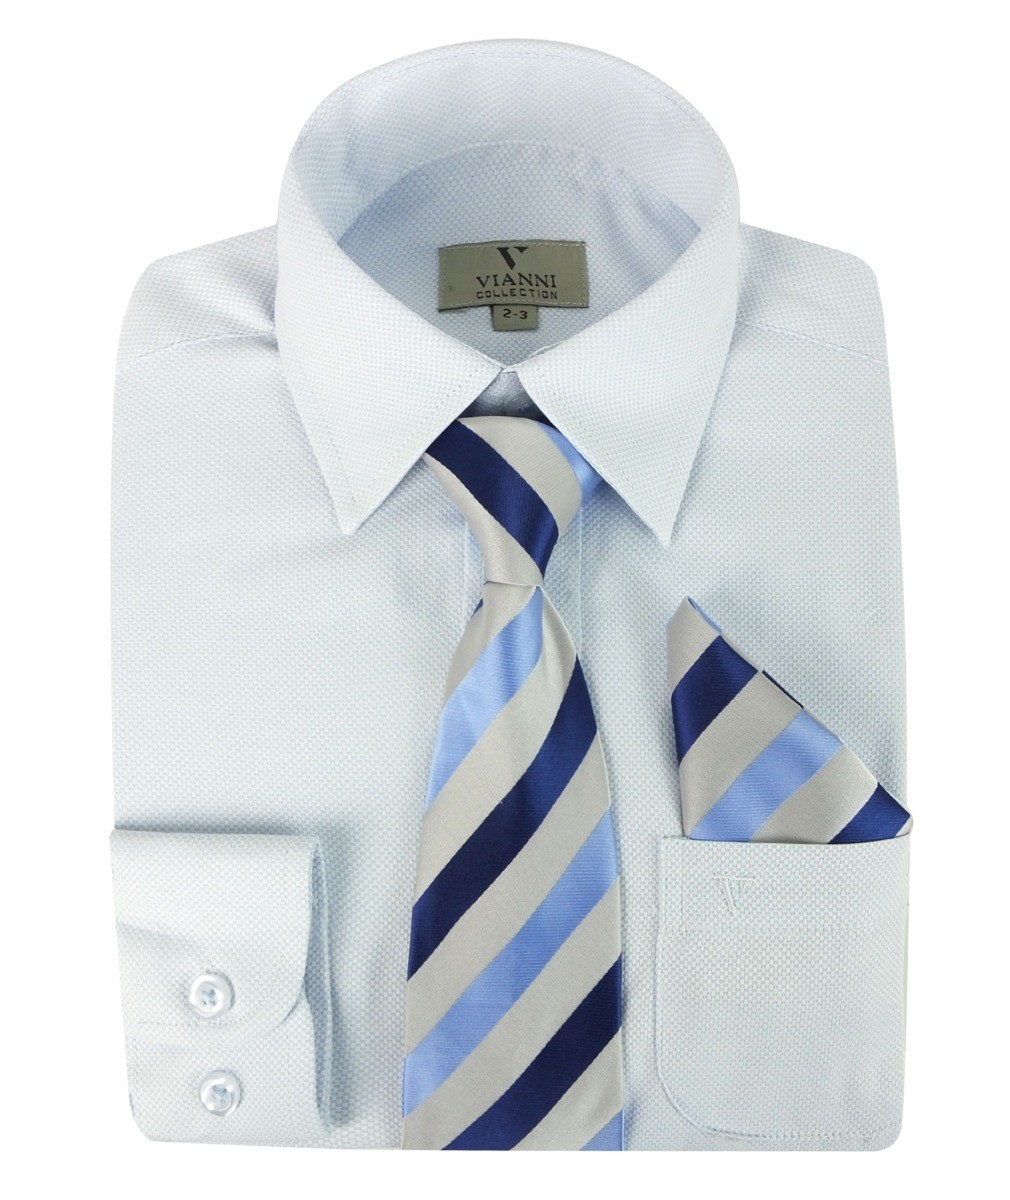 Baby Jungen Vianni Cotton Mischmisch - Hellblau gemusterte Krawatte